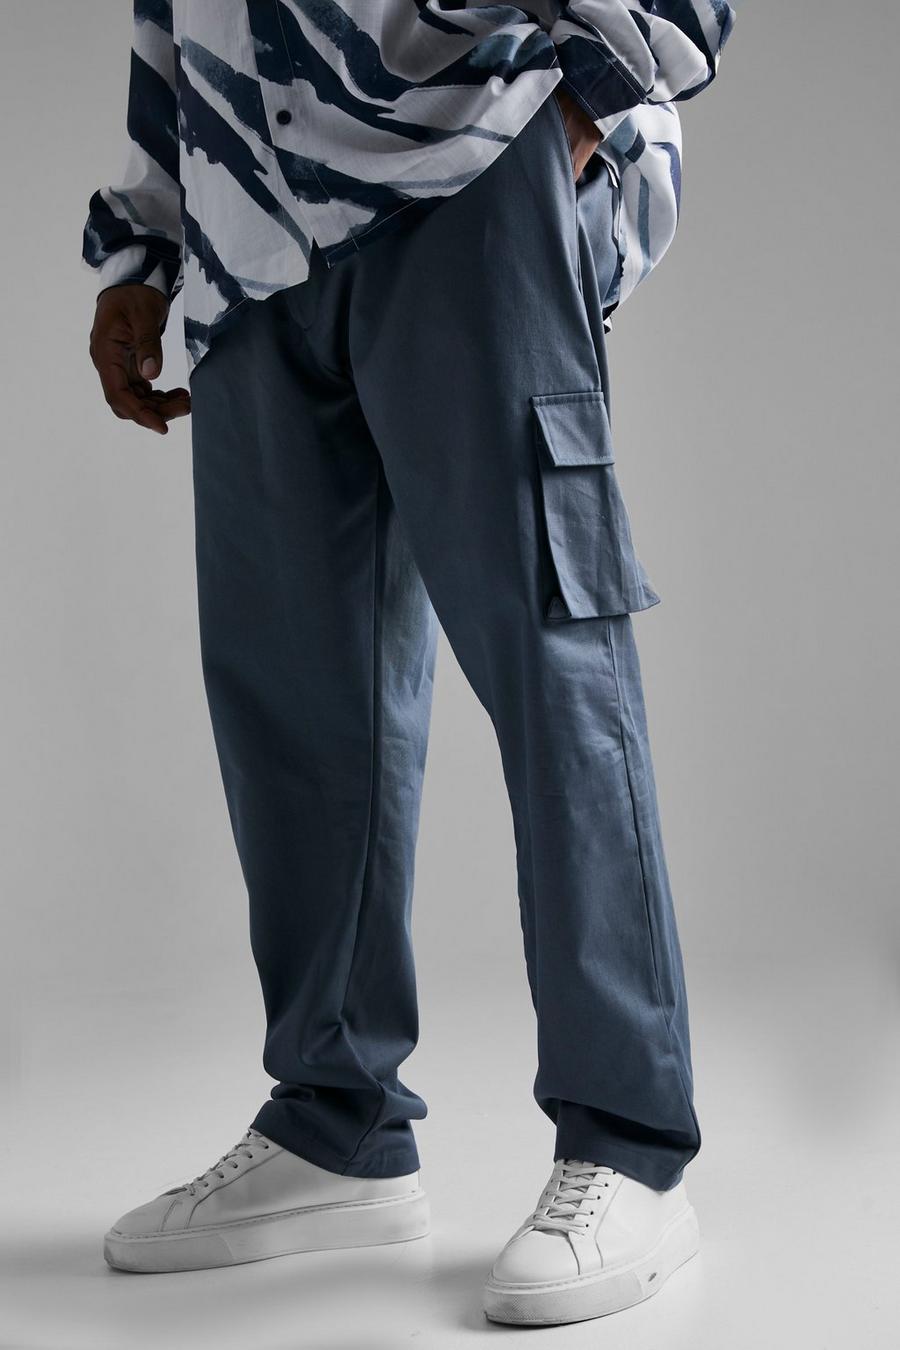 כחול צפחה azzurro מכנסי דגמ'ח בגזרה רגילה, מידות גדולות